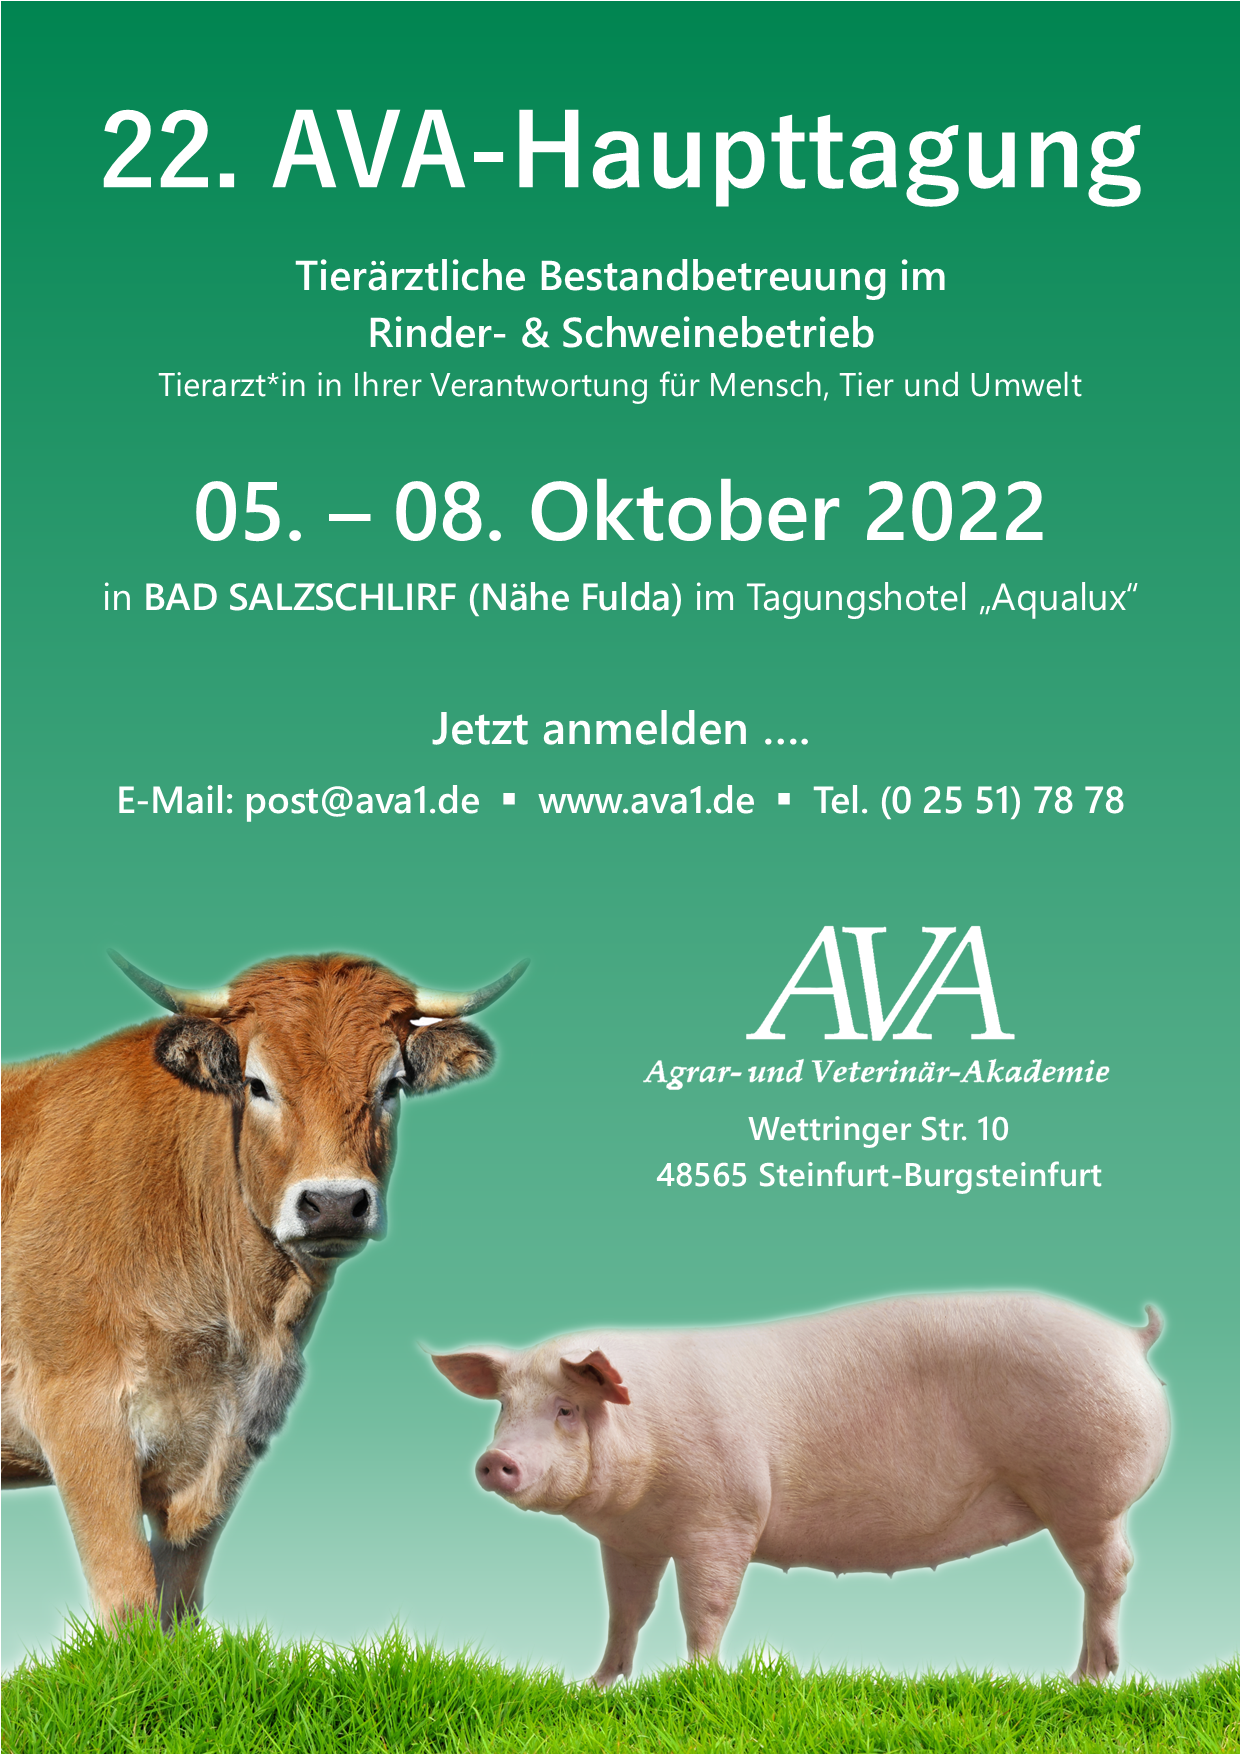 Deutsche-Politik-News.de | Die Einladung für Tierärzt*innen zur Tagung